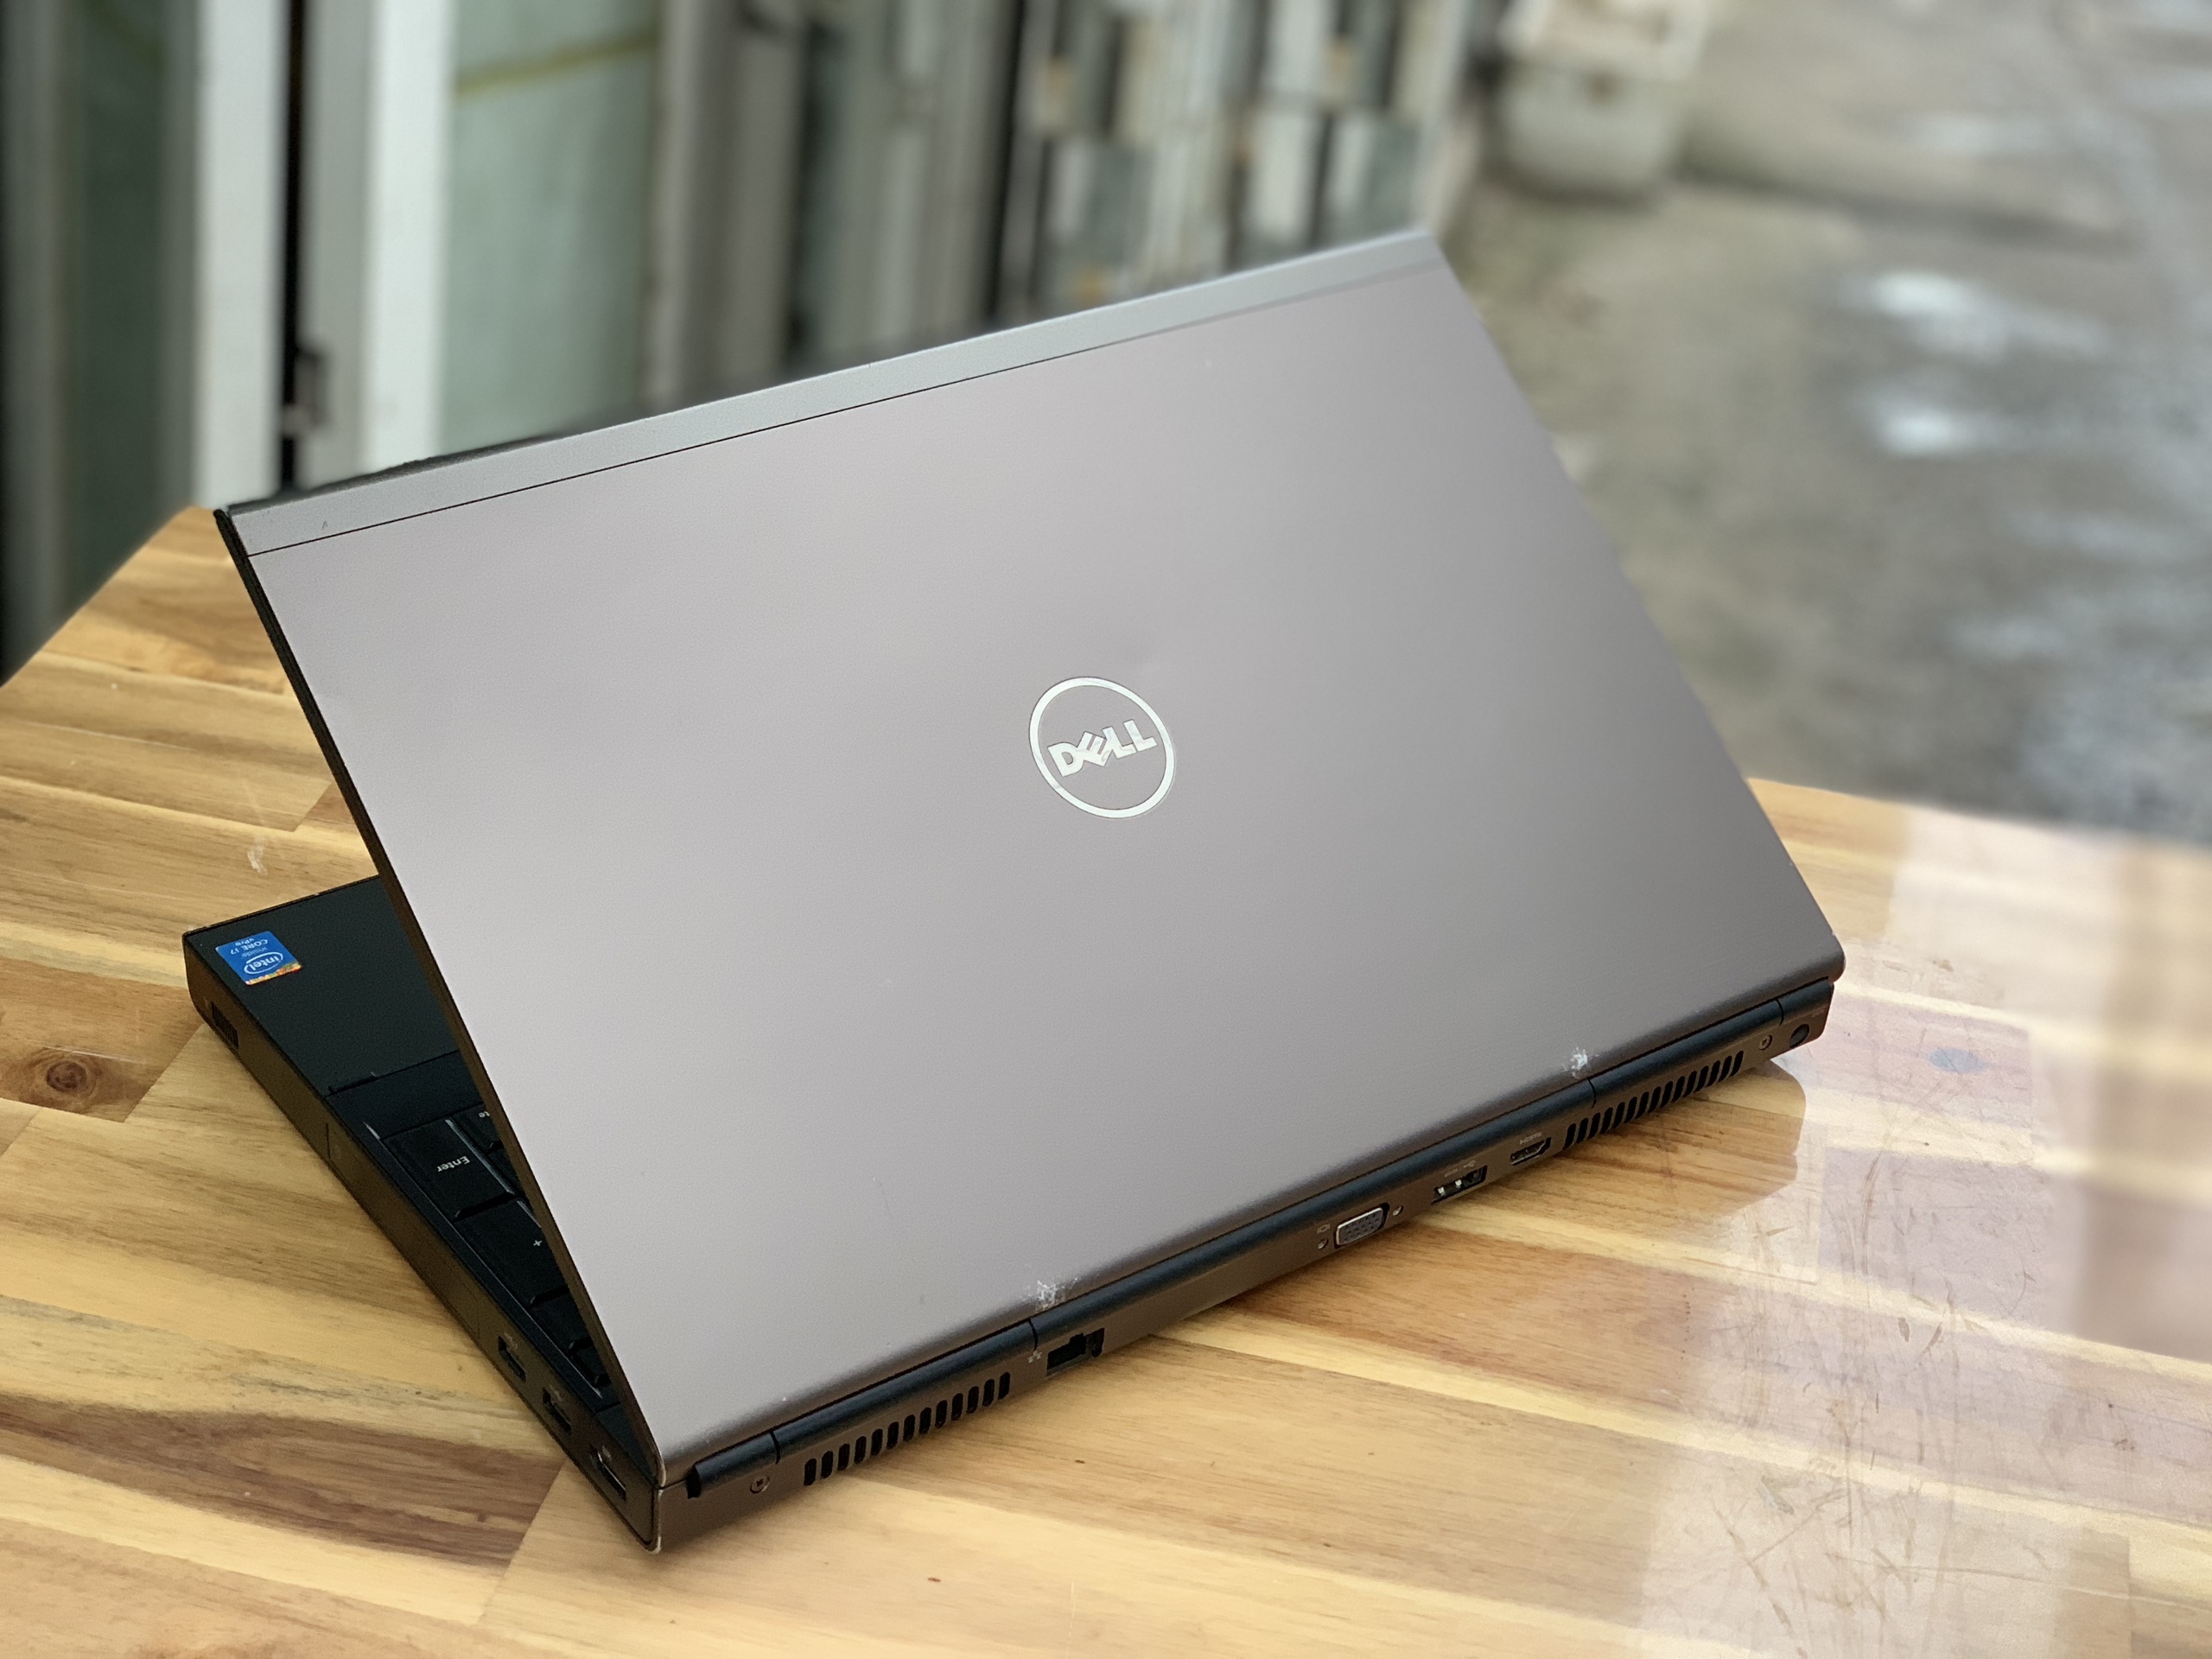 Laptop Dell Precision M4800, i7 4800QM 8G SSD256 Quadro K2100M Full HD Đèn phím Đẹp zin 100% Giá rẻ3